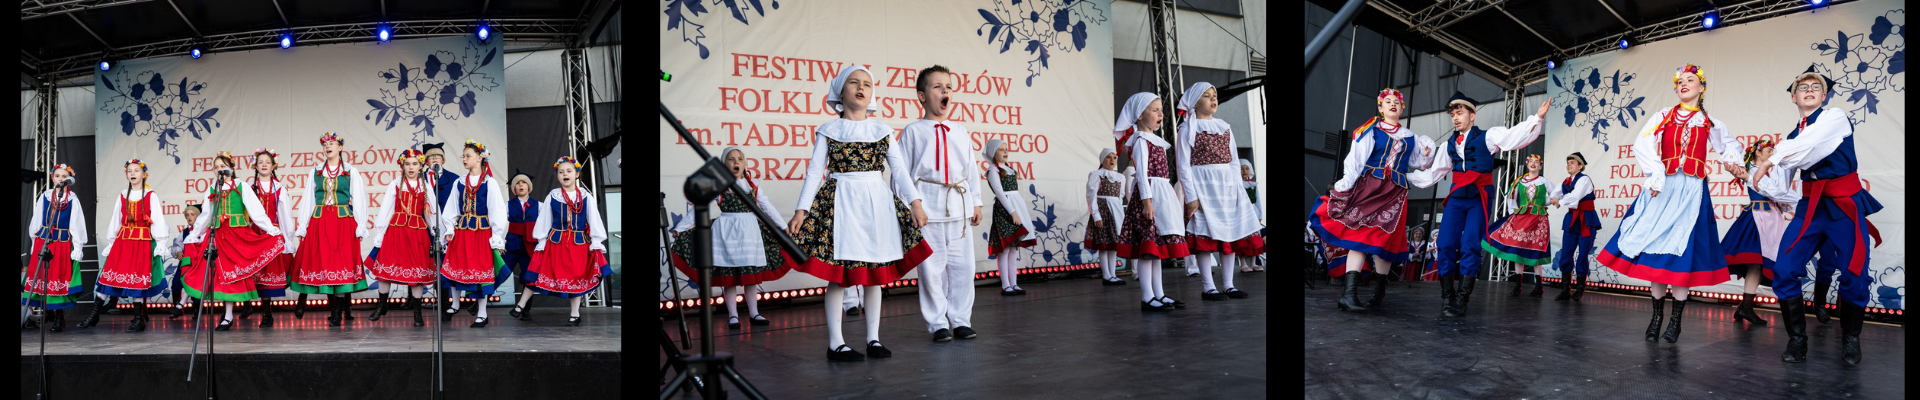 Za nami VIII Festiwal Zespołów Folklorystycznych im. Tadeusza Zielińskiego